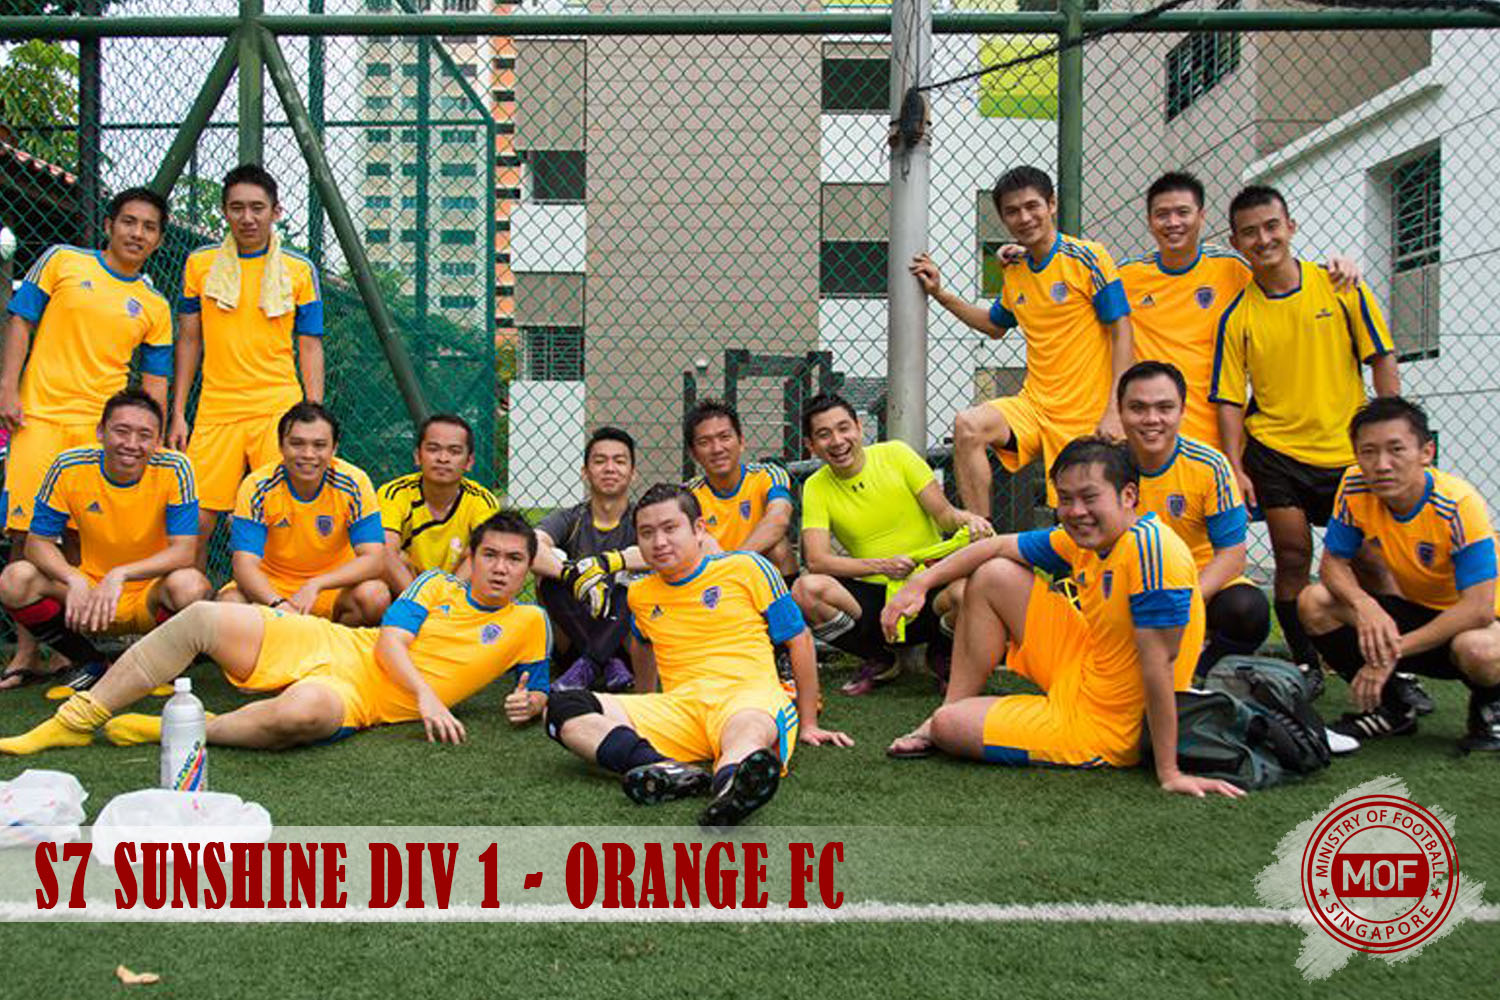 Orange FC